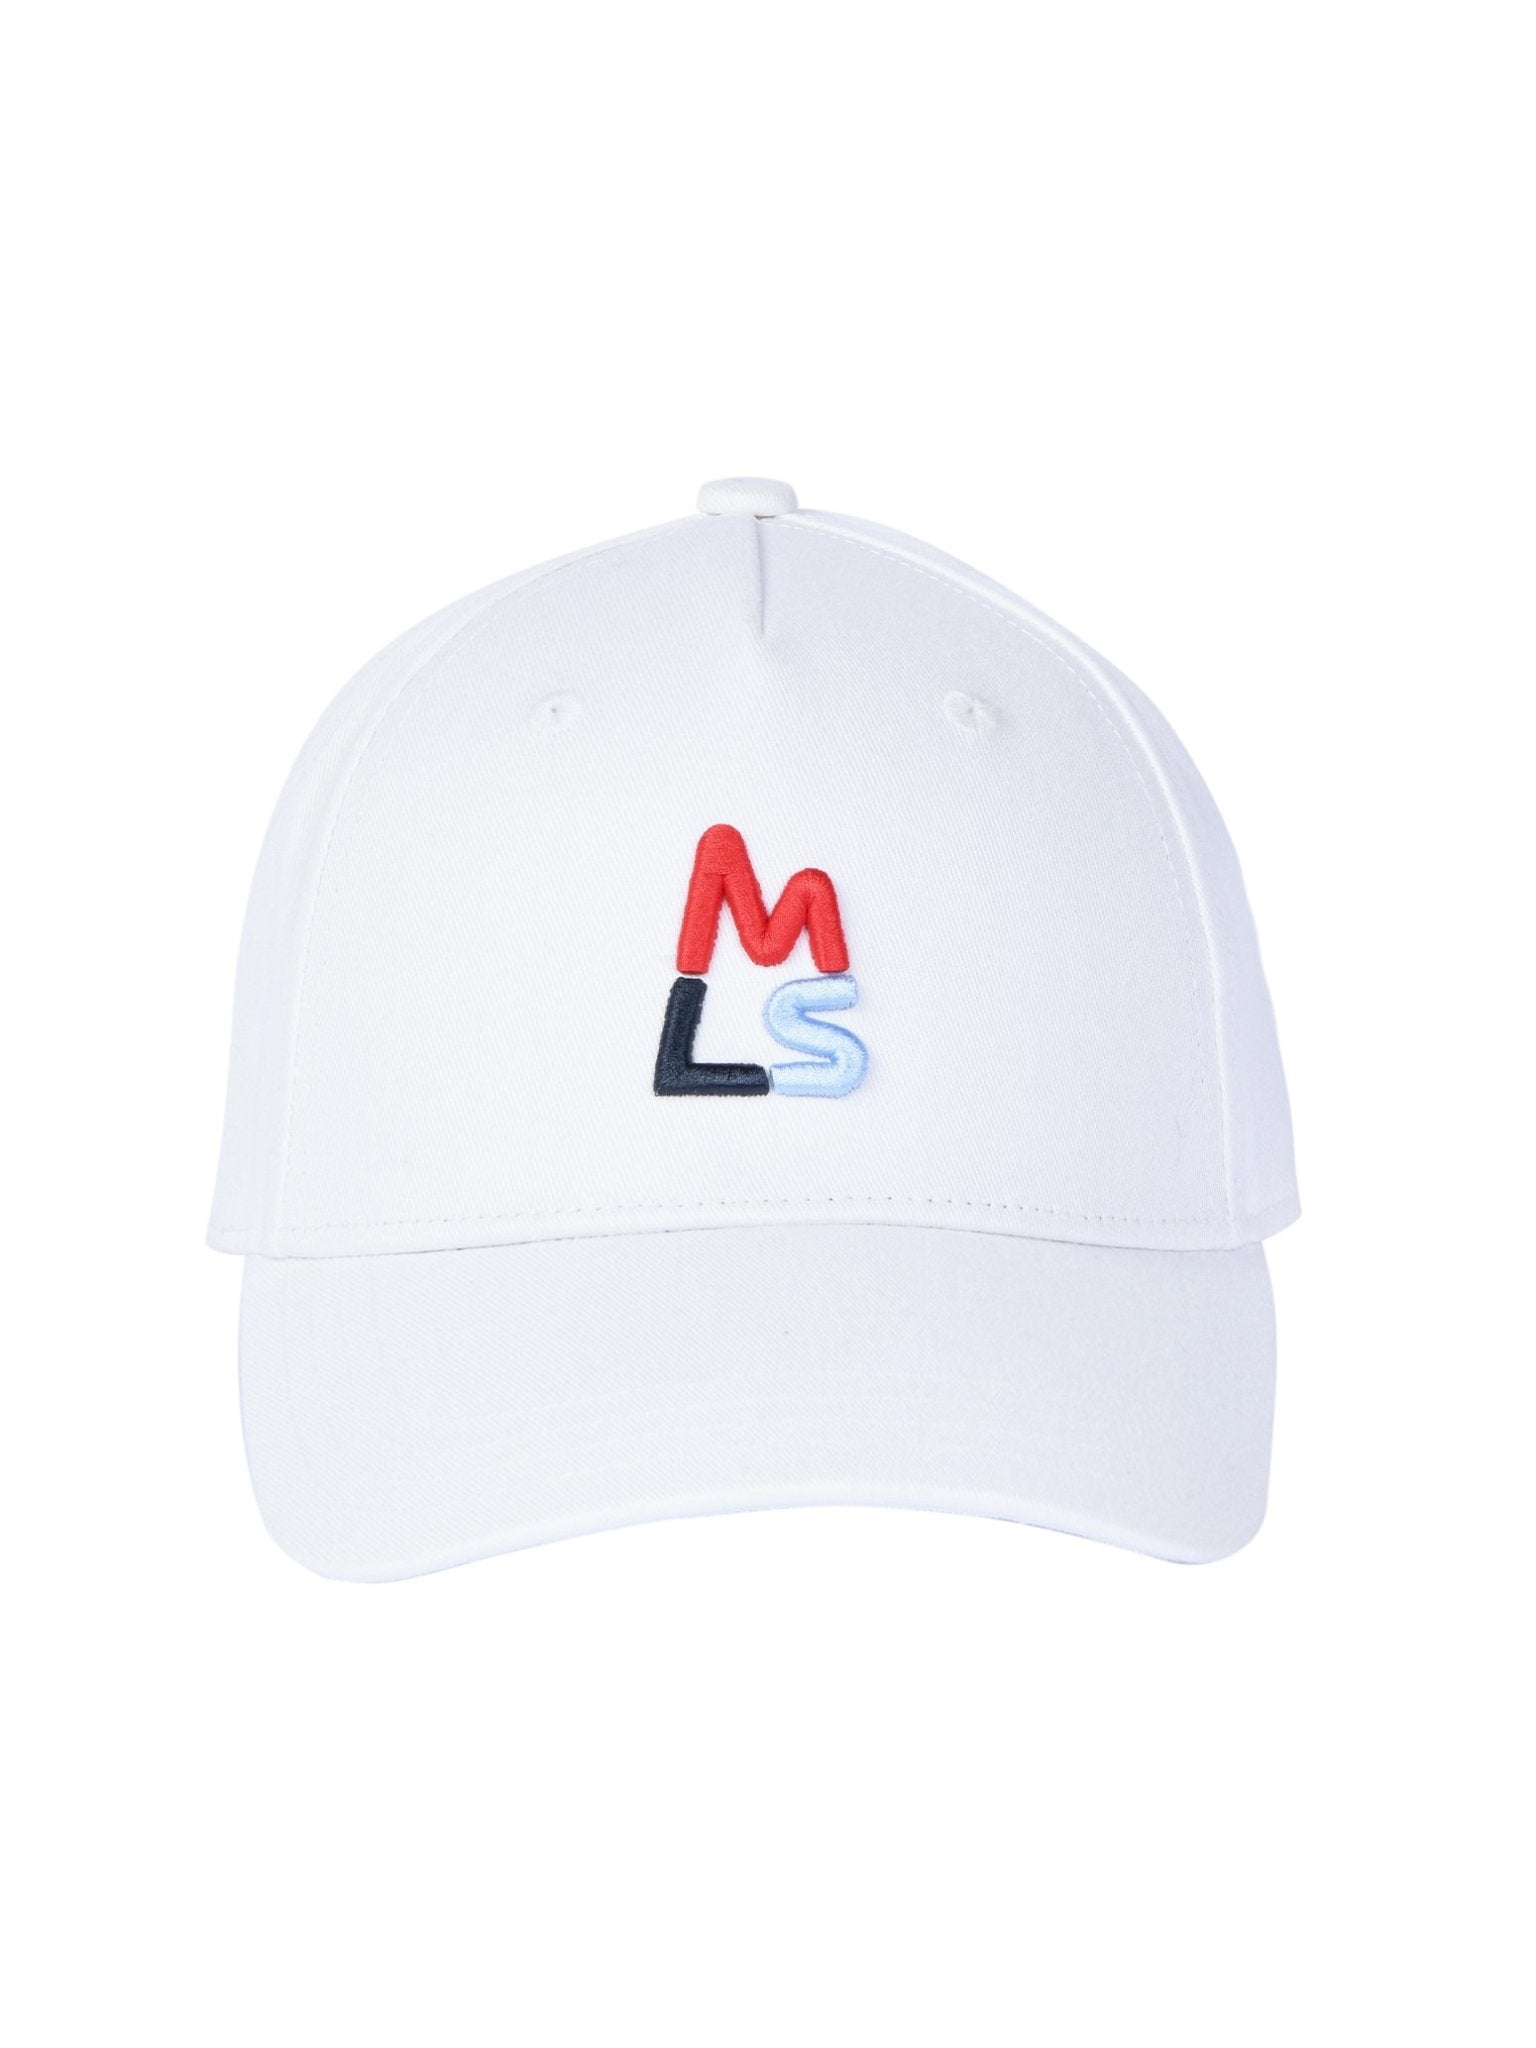 MLS Cap - Magnlens